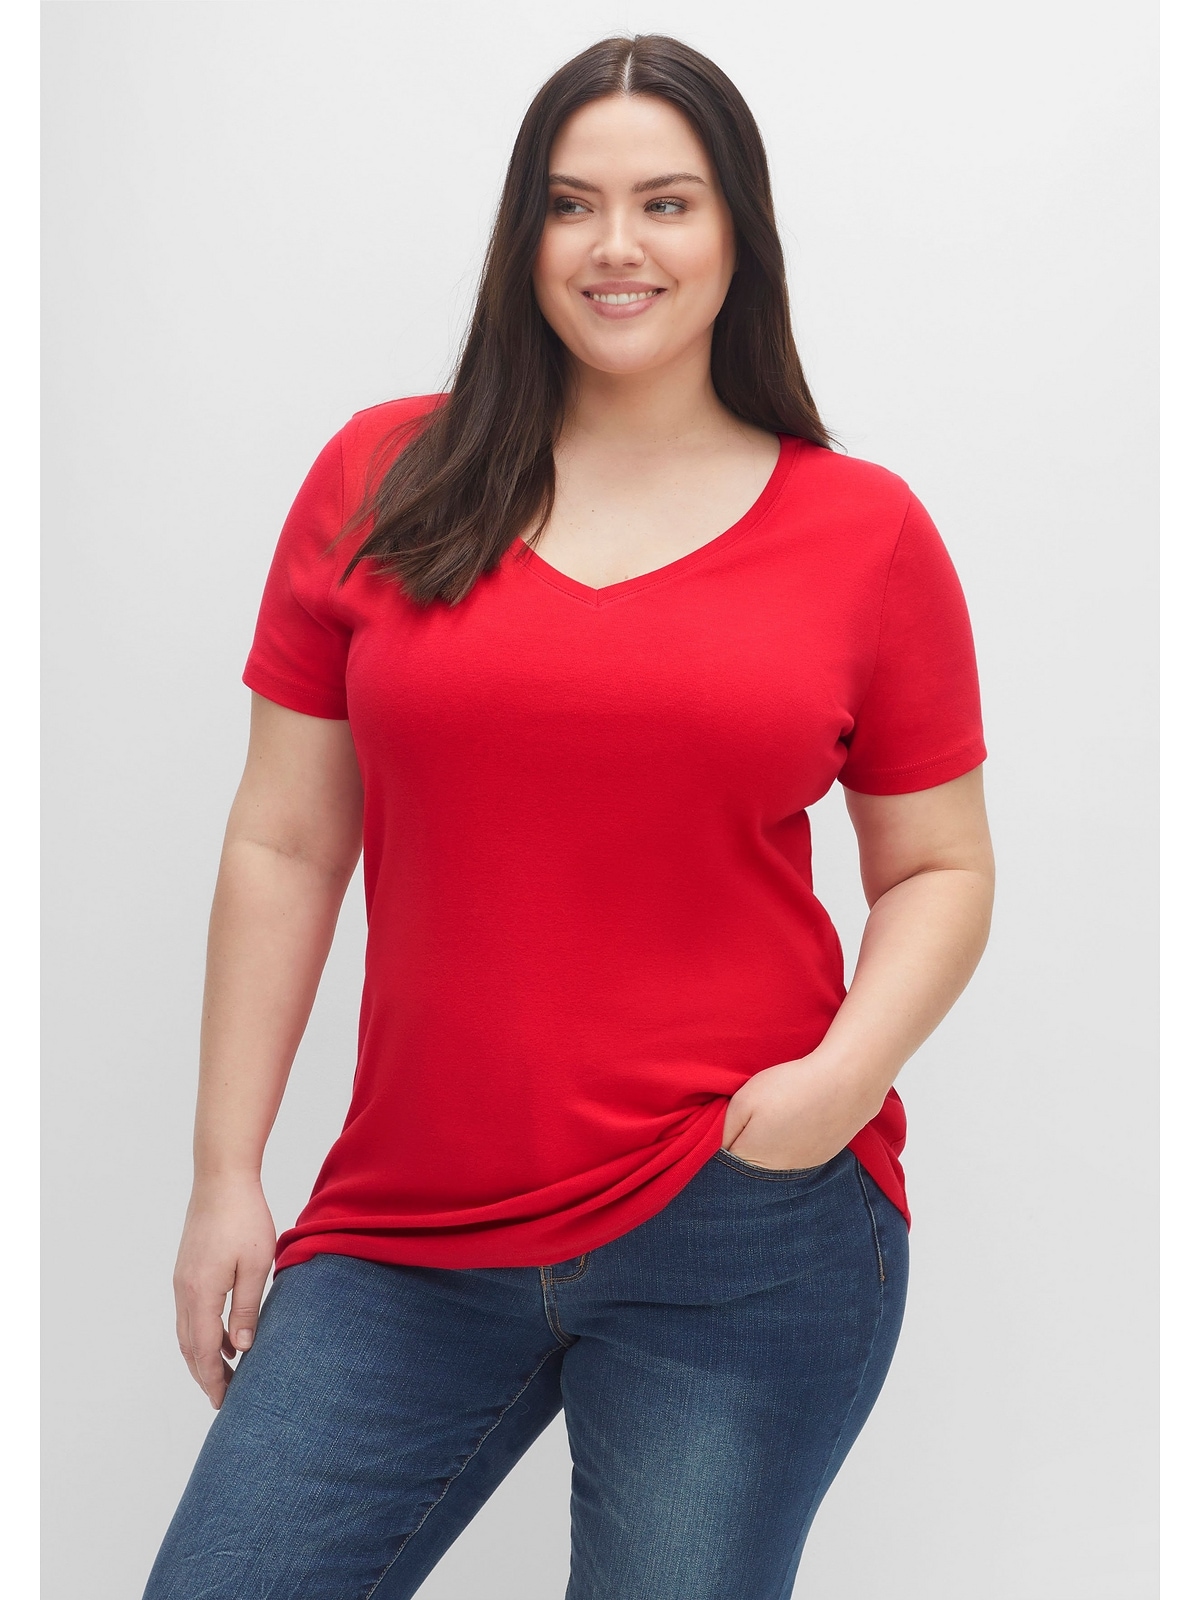 Damen T-Shirts in Großen Größen günstig bei online BAUR